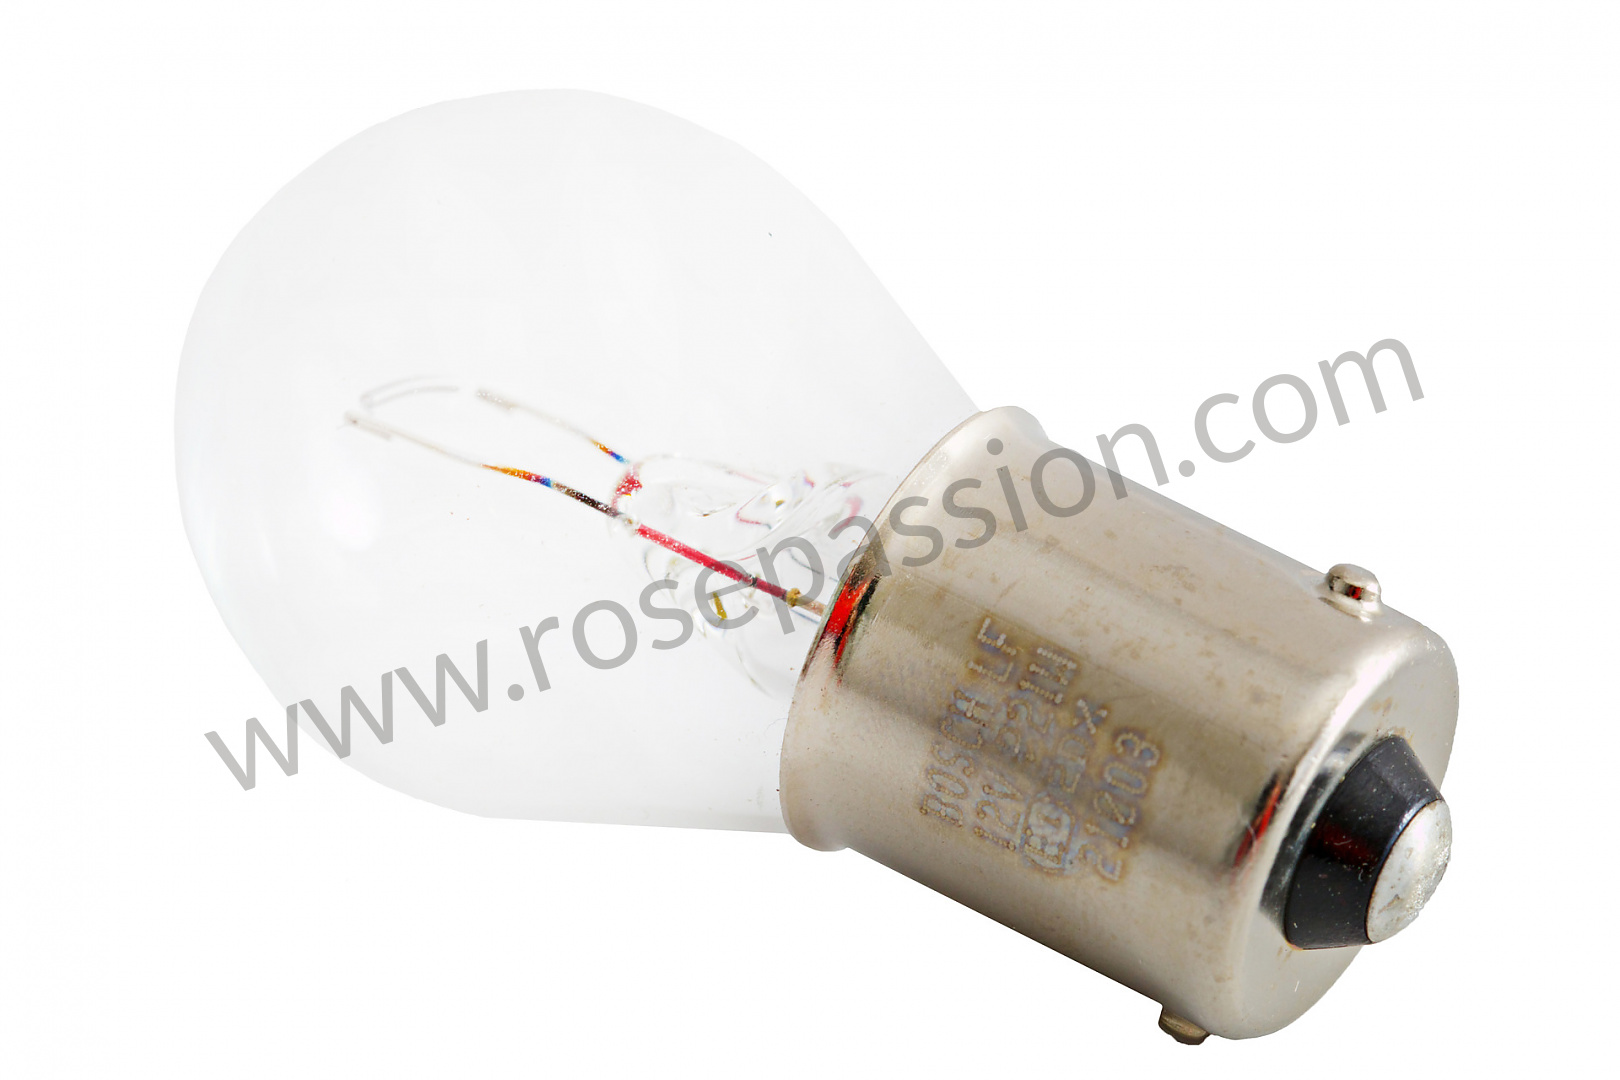 P12383 - 90063112790 - Ampoule clignotant - BLANC / BLANC / 21 WATT / AVANT  pour Porsche